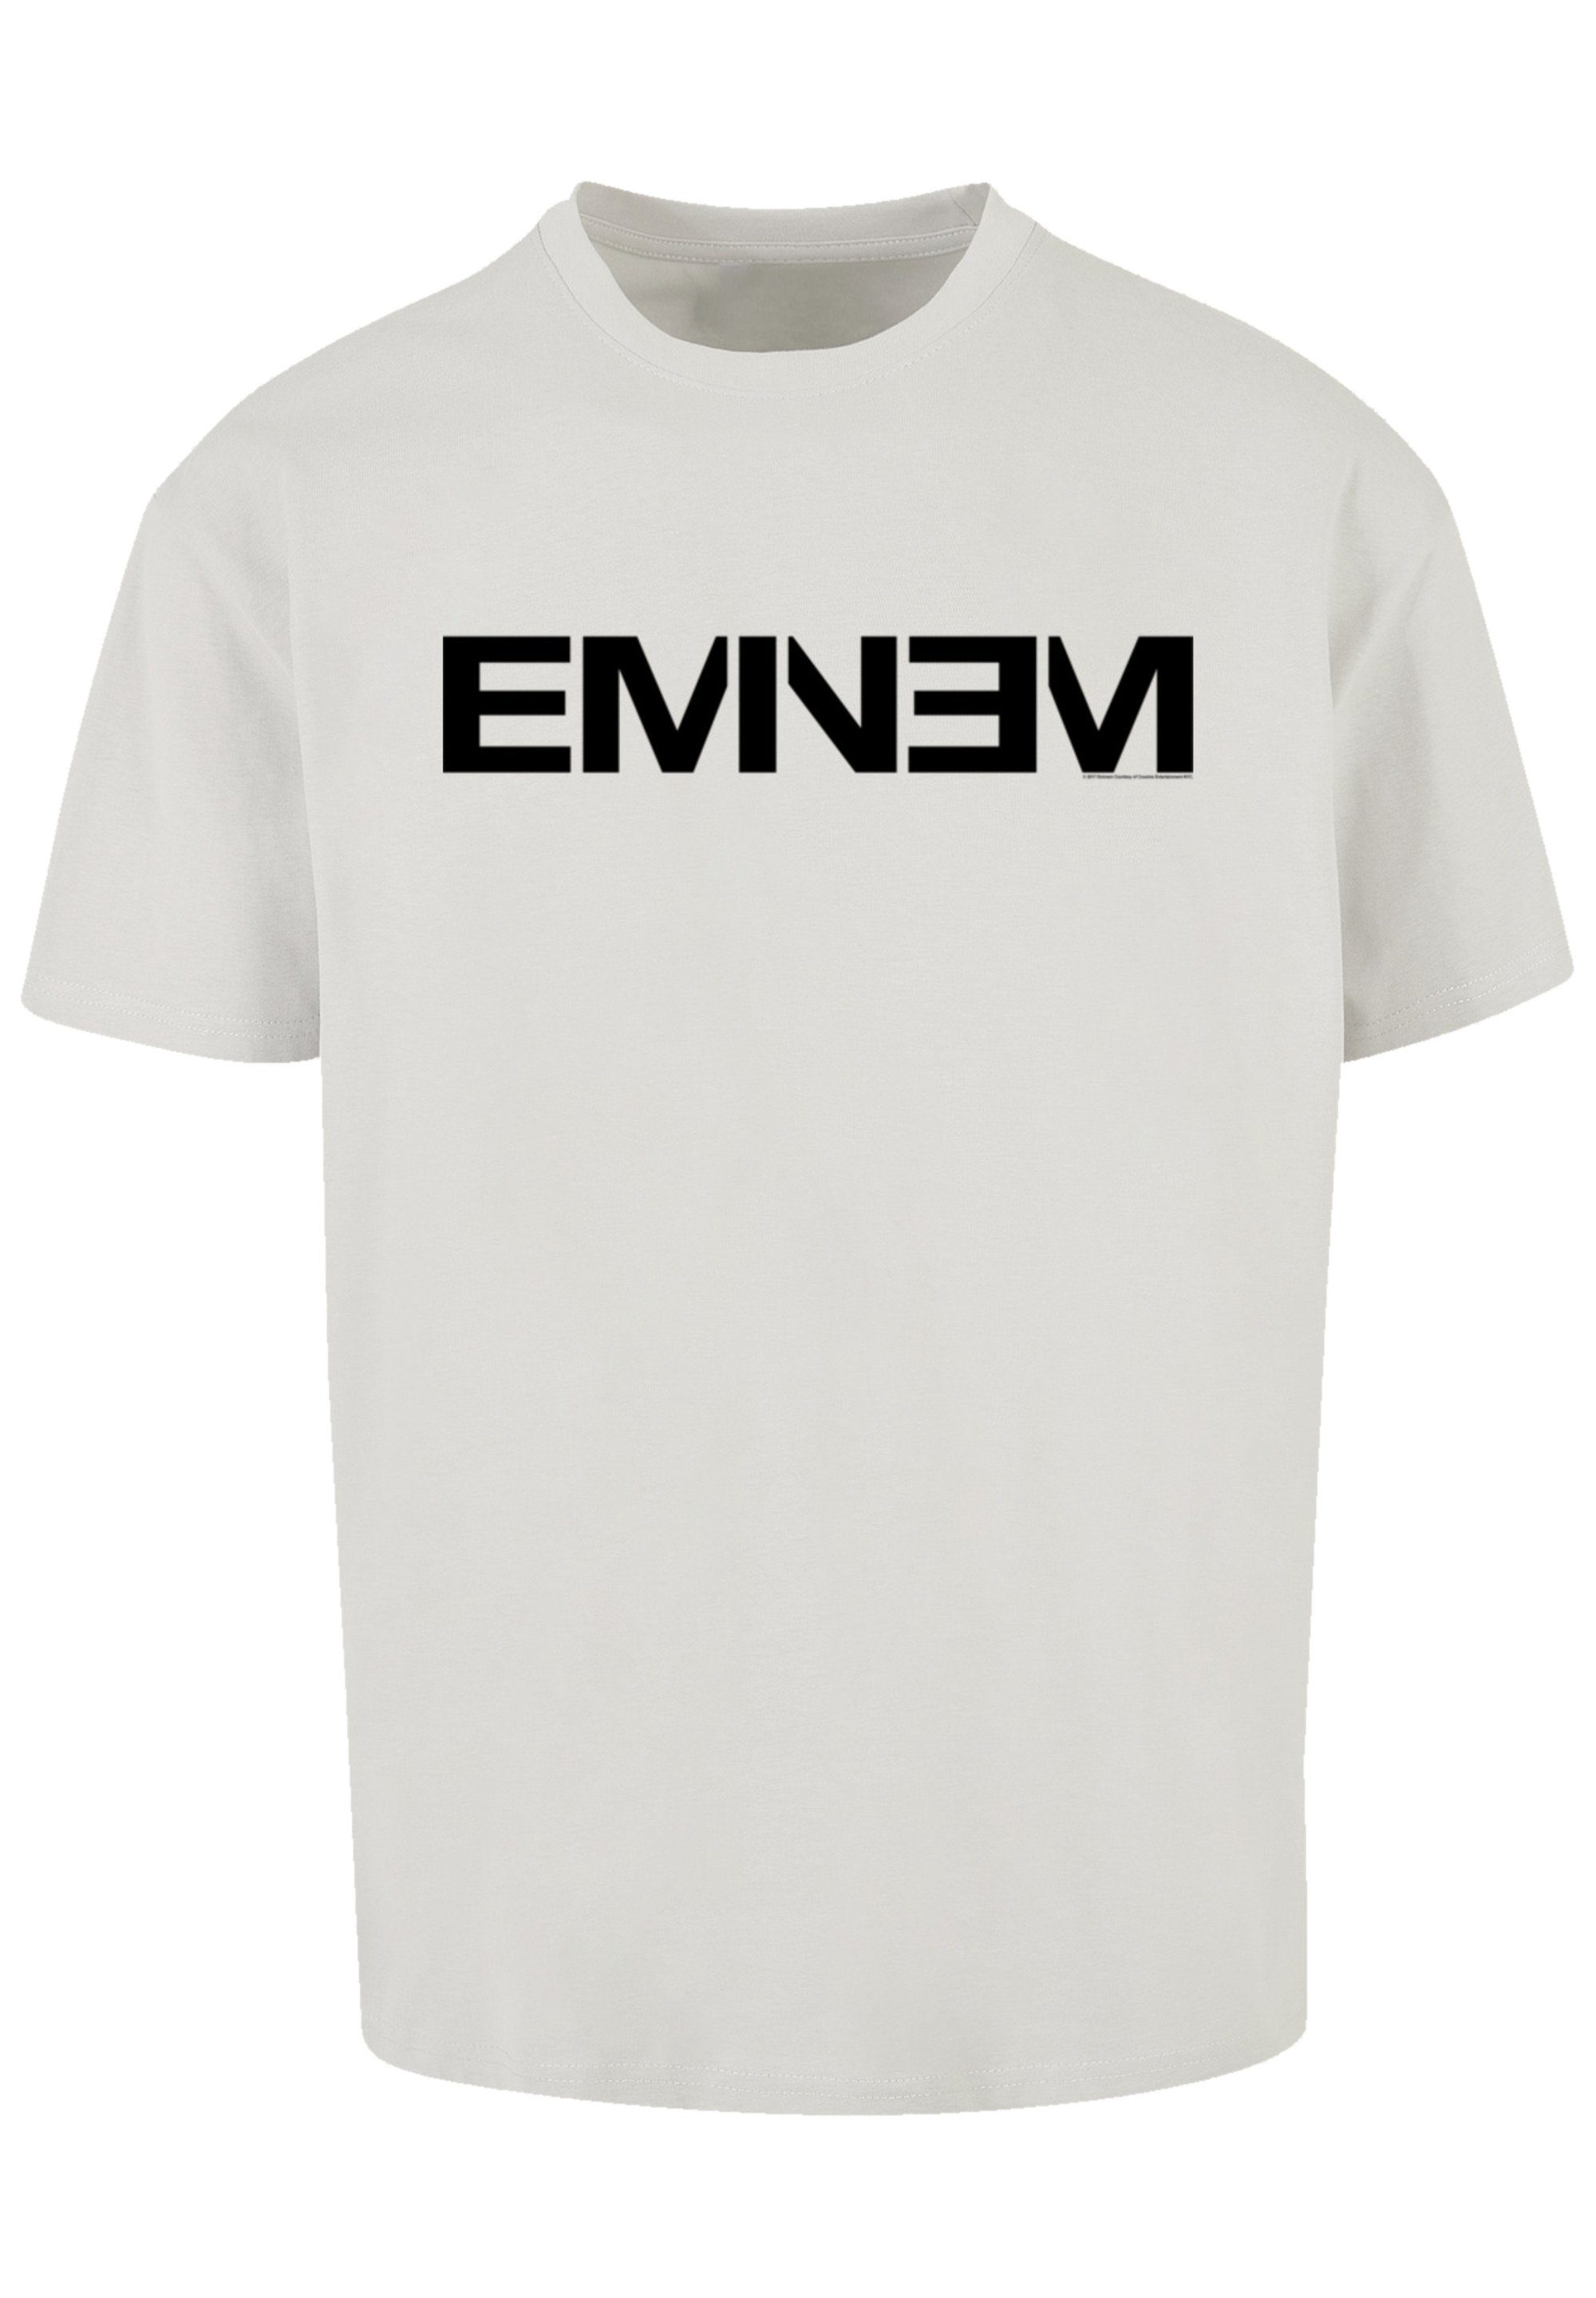 T-Shirt Musik Eminem Premium Rap Hop F4NT4STIC Music Qualität, Hip lightasphalt